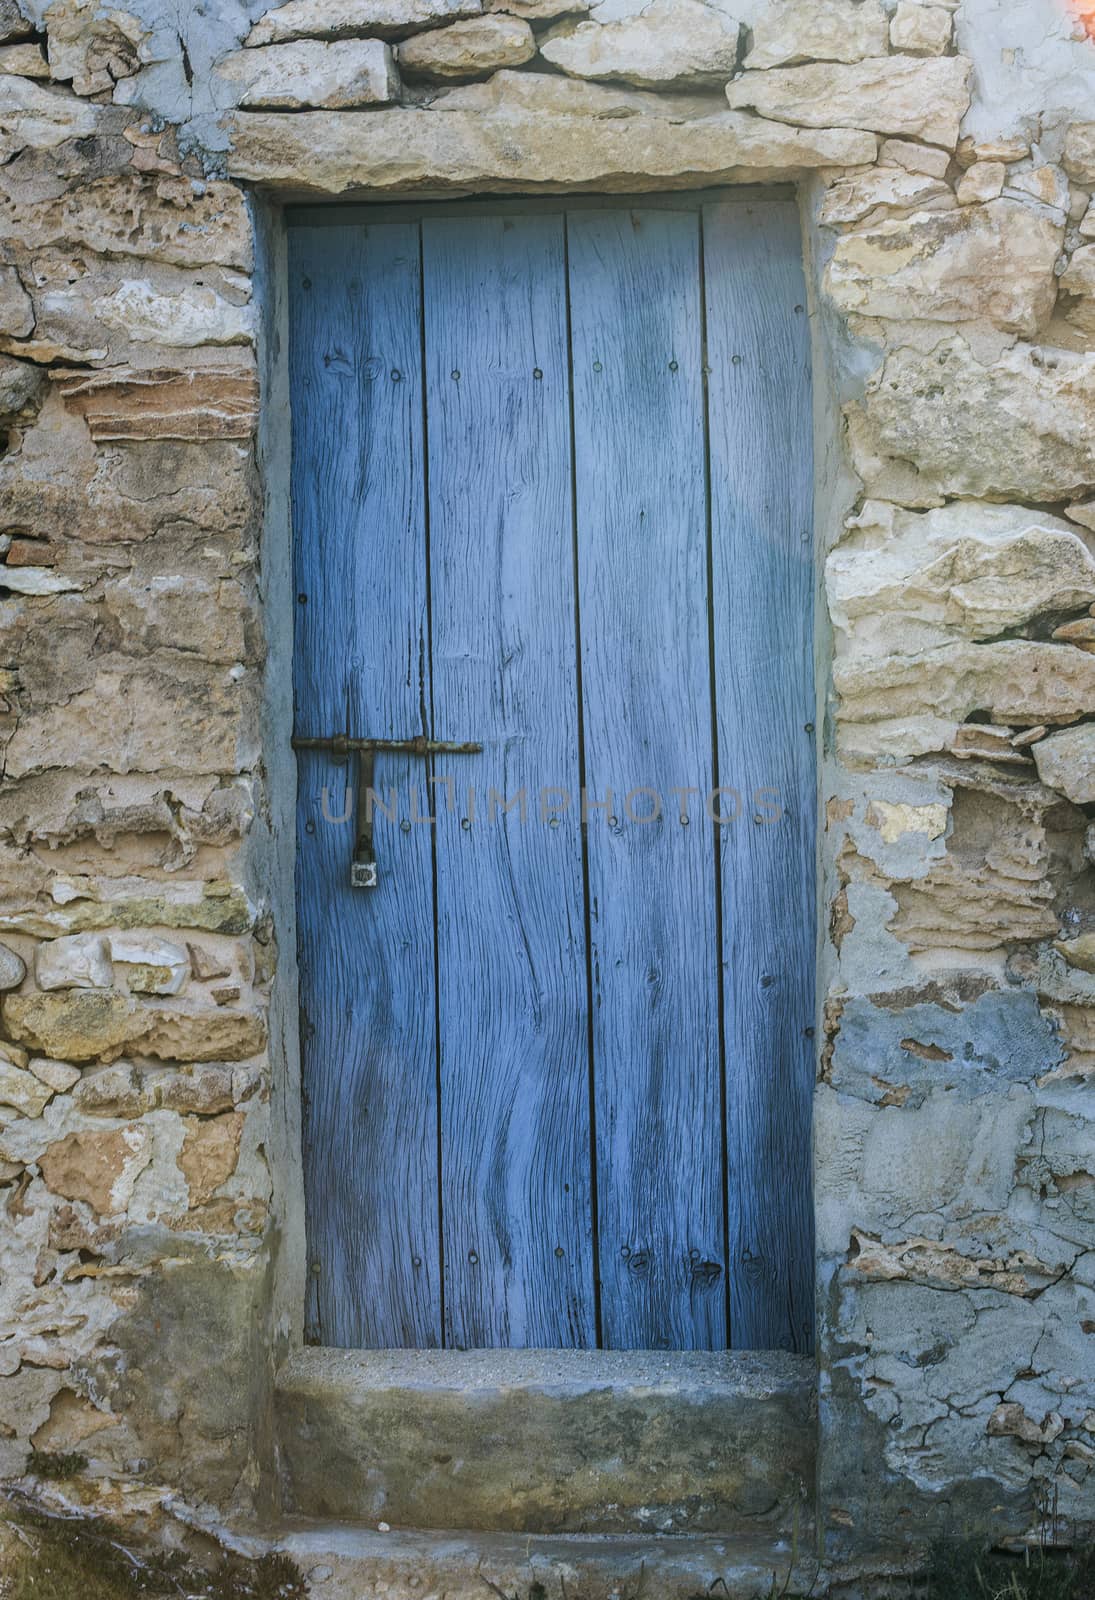 Rustic blue wooden door